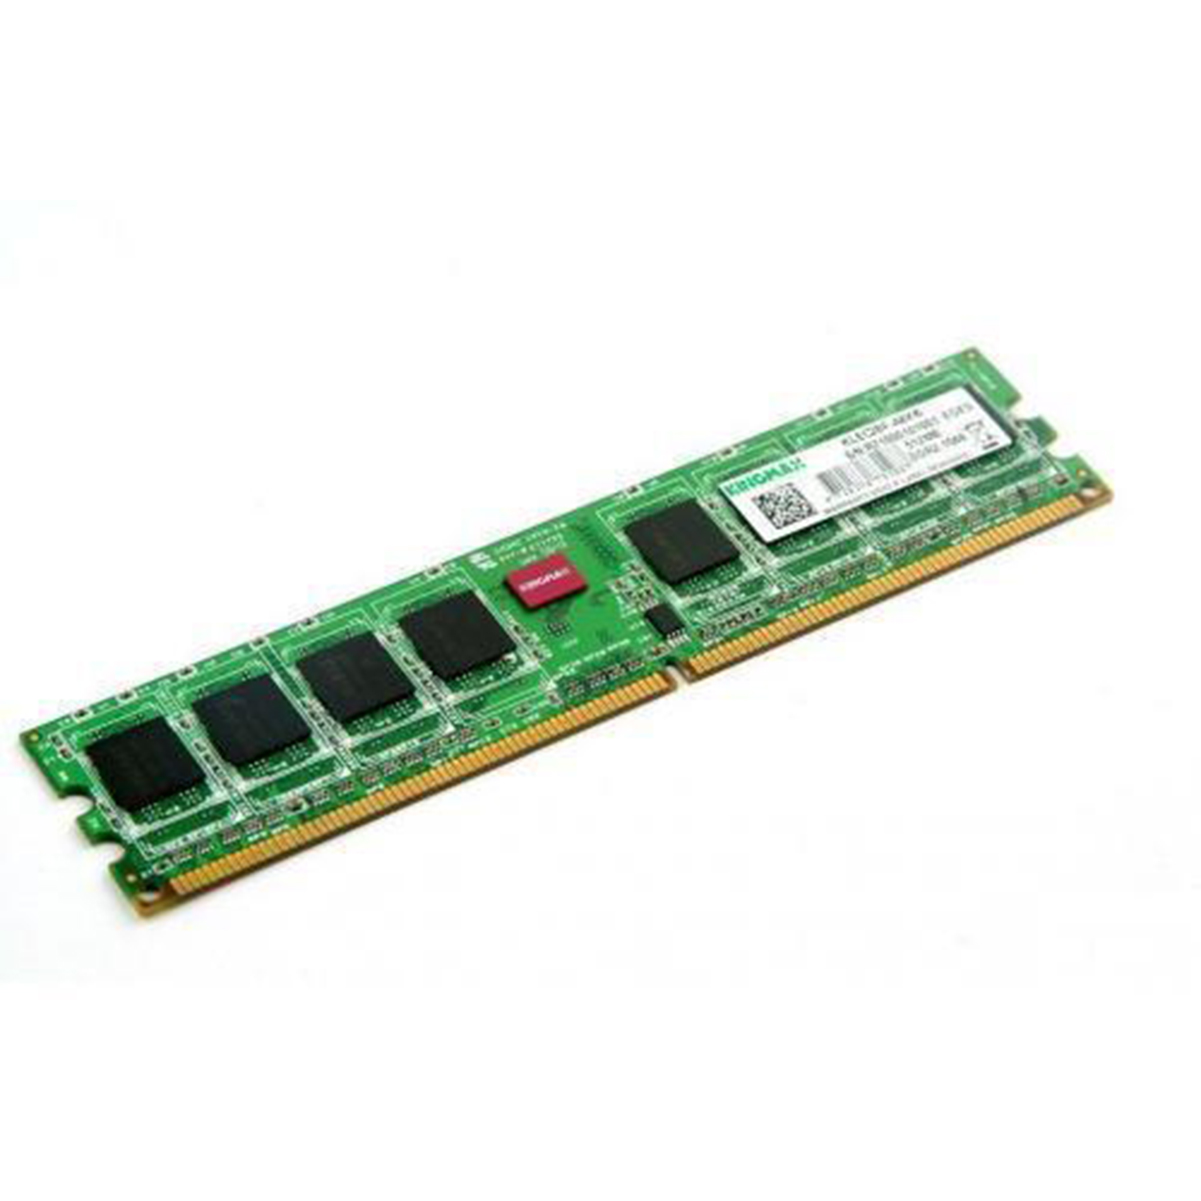 RAM DATO DDR3 2GB BUS 1333/1600MHZ - Hàng chính hãng